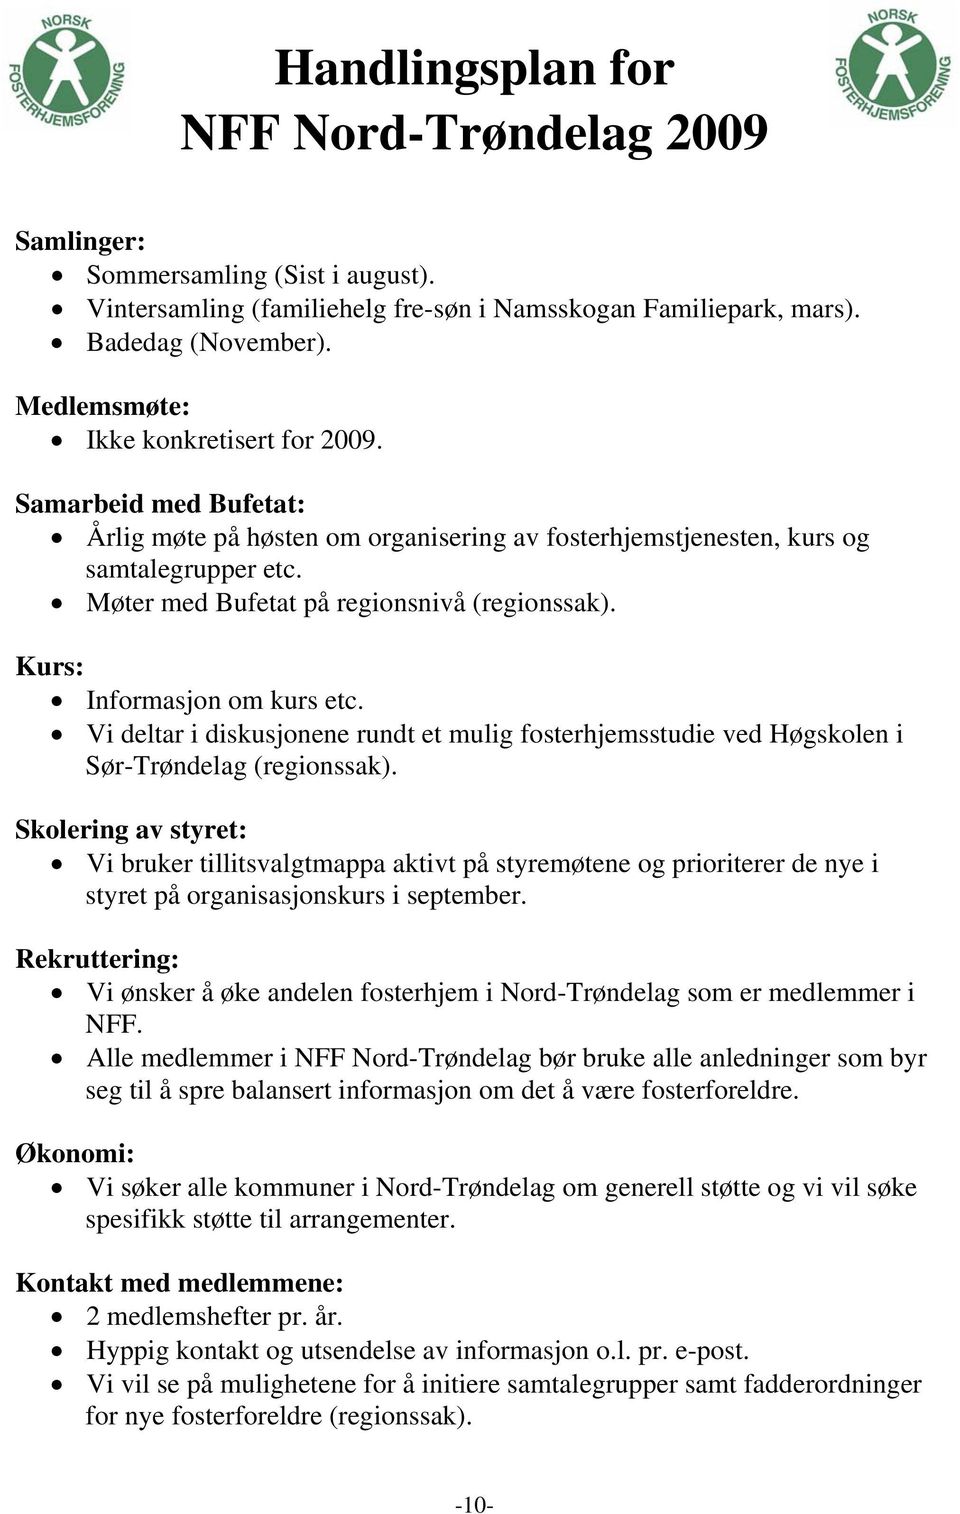 Kurs: Informasjon om kurs etc. Vi deltar i diskusjonene rundt et mulig fosterhjemsstudie ved Høgskolen i Sør-Trøndelag (regionssak).